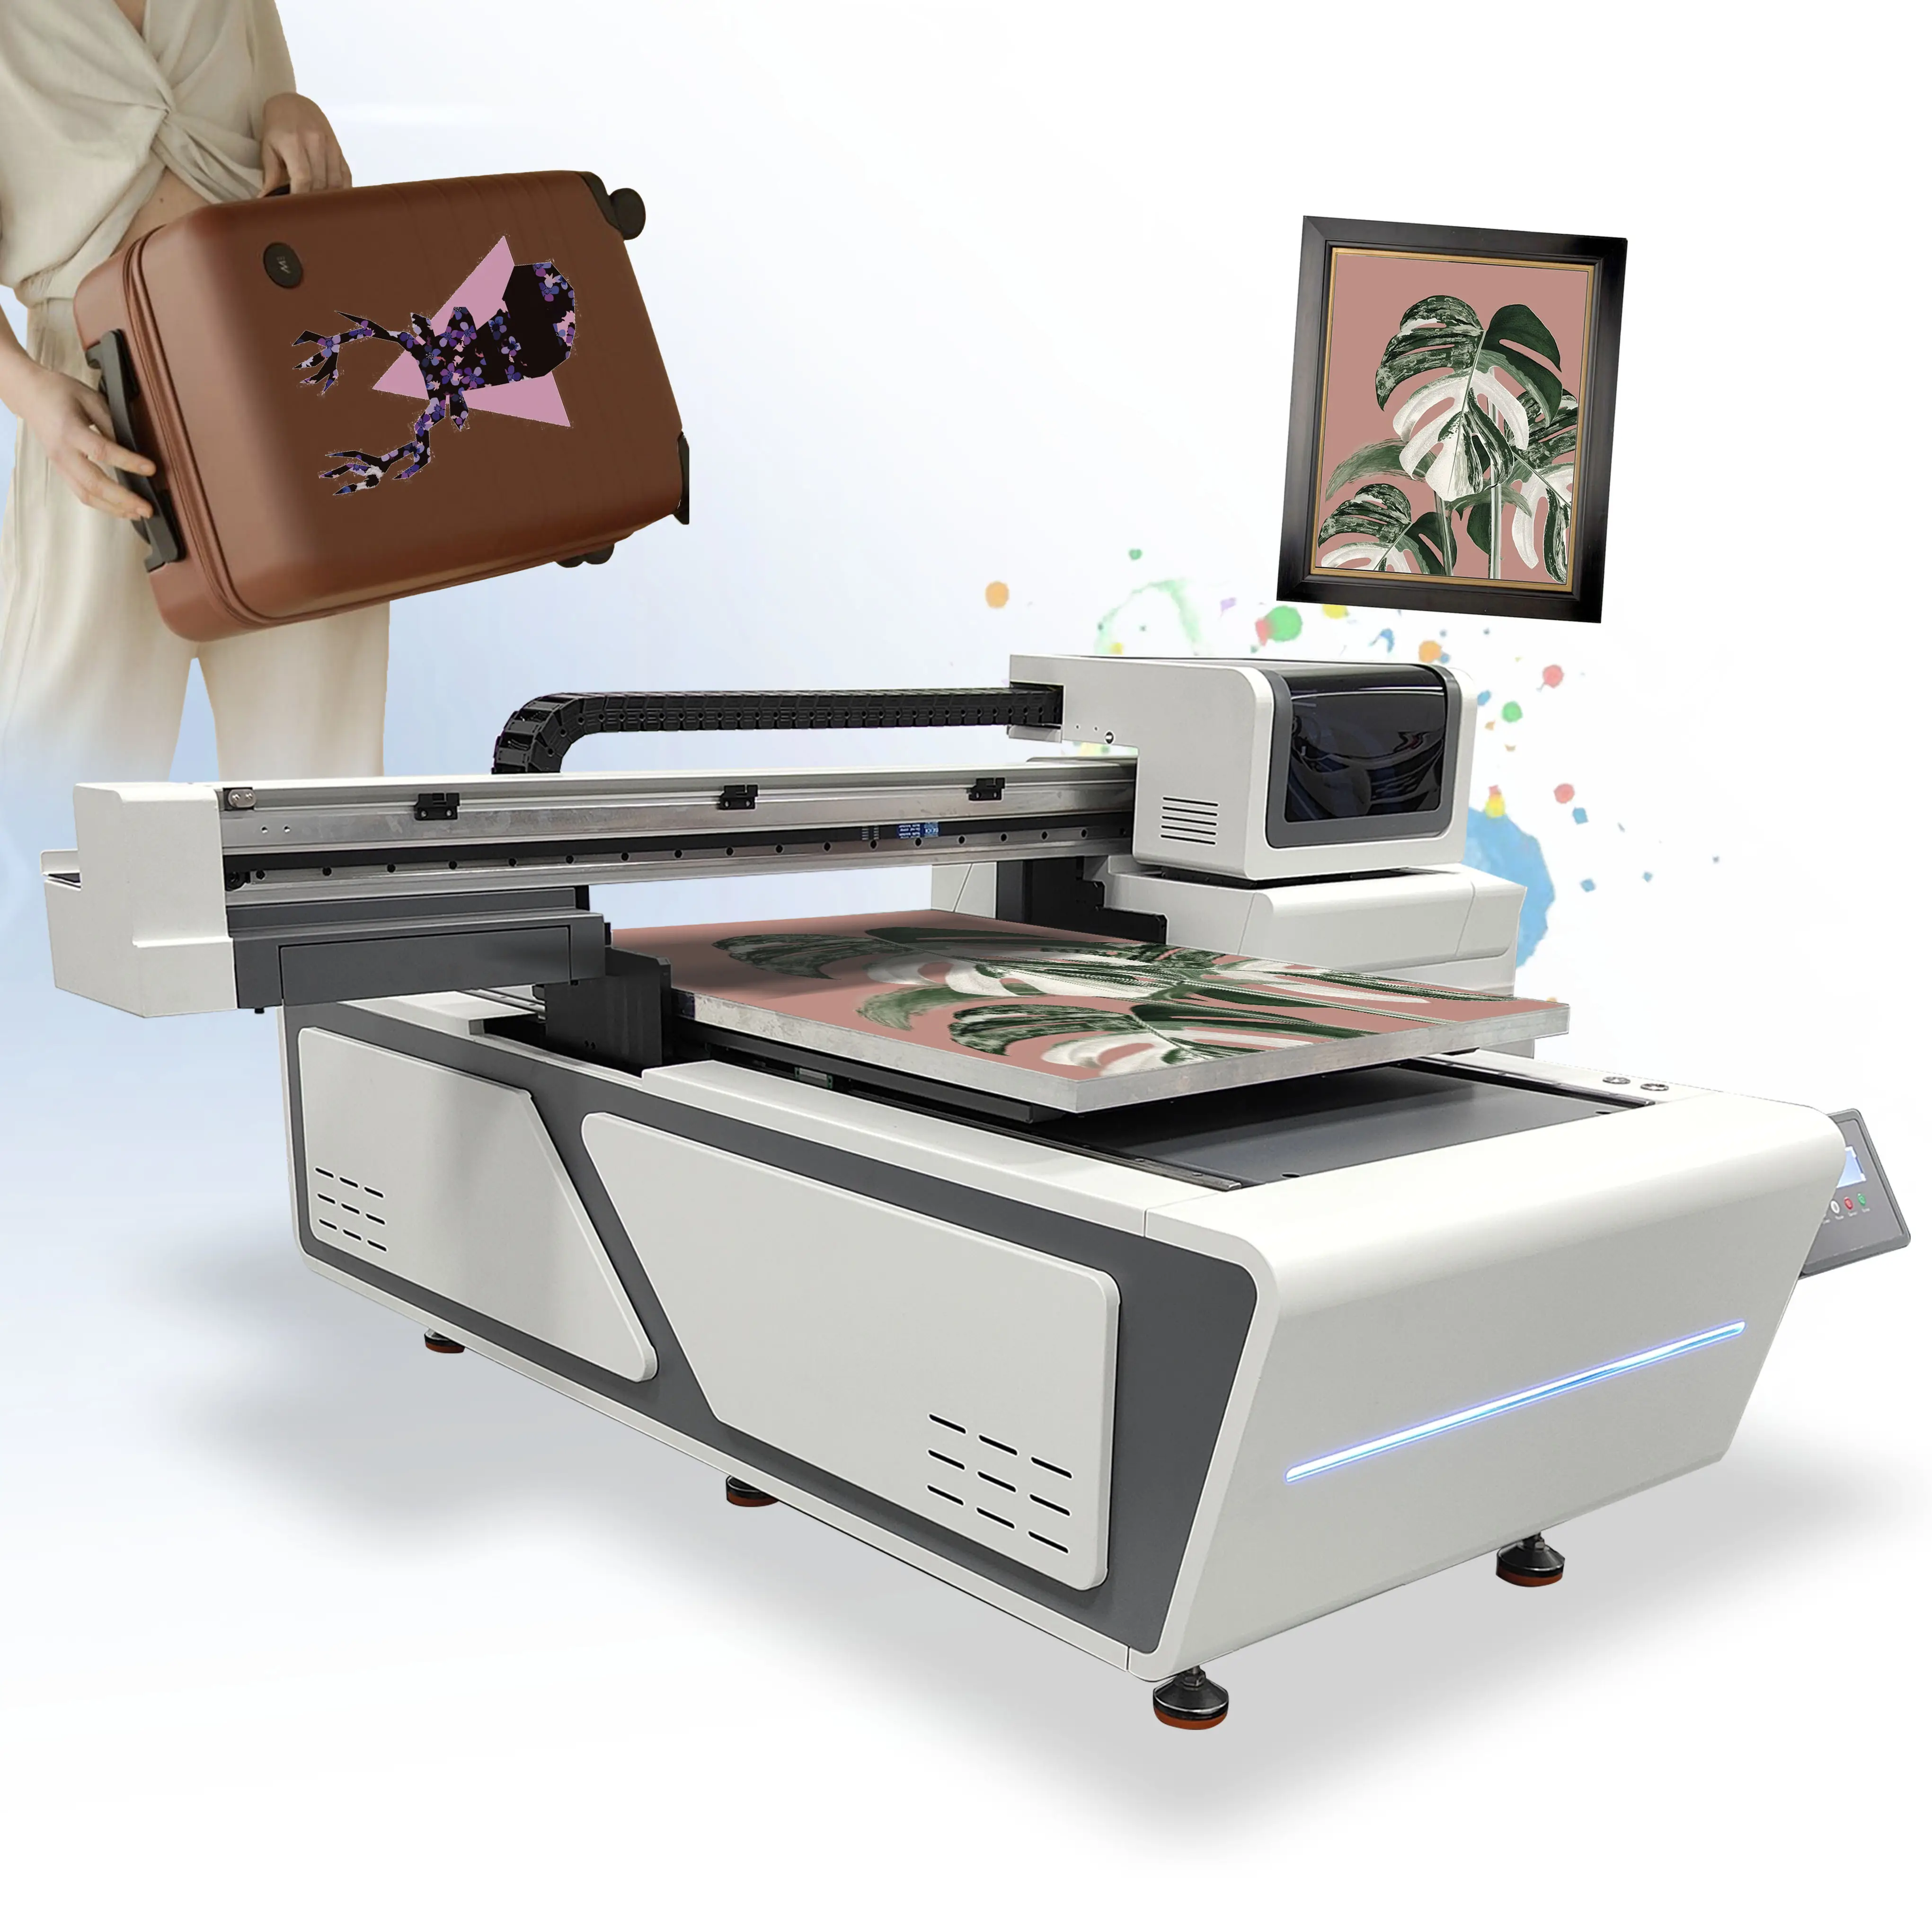 เครื่องพิมพ์ UV Flatbed ขนาด 6090 คุณภาพสูงราคาถูกเพื่อพิมพ์ข้อความและโลโก้